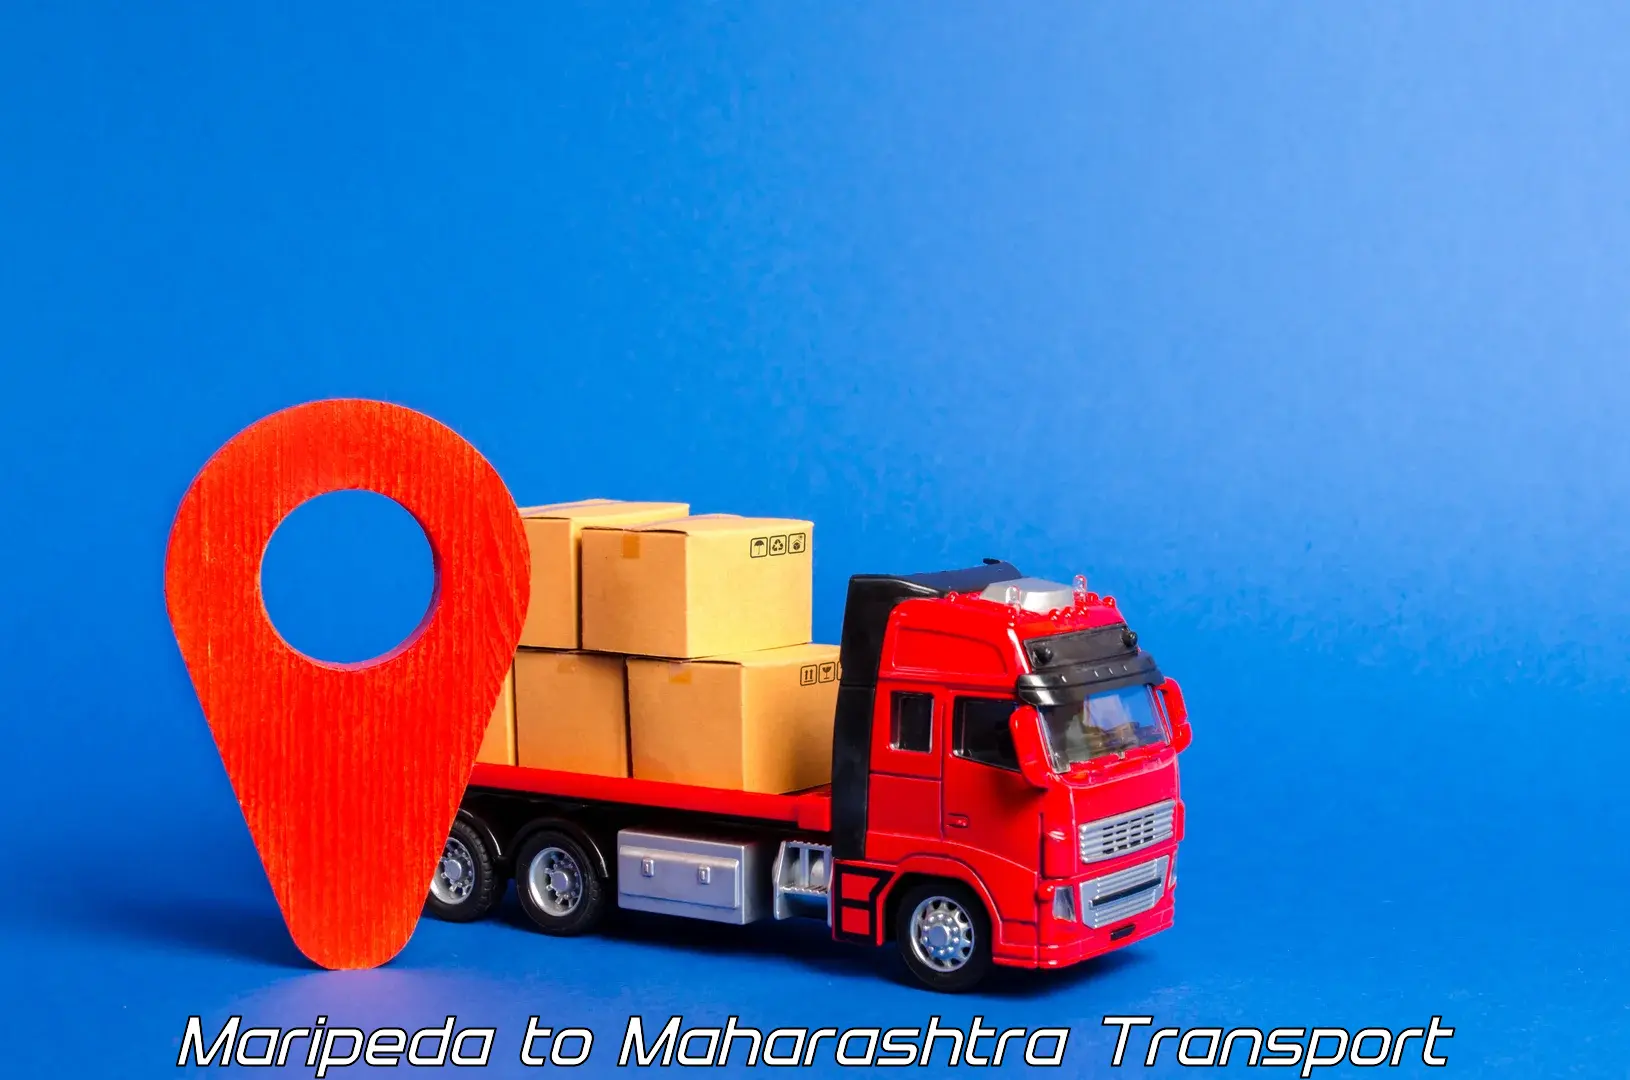 Nearest transport service Maripeda to Oras